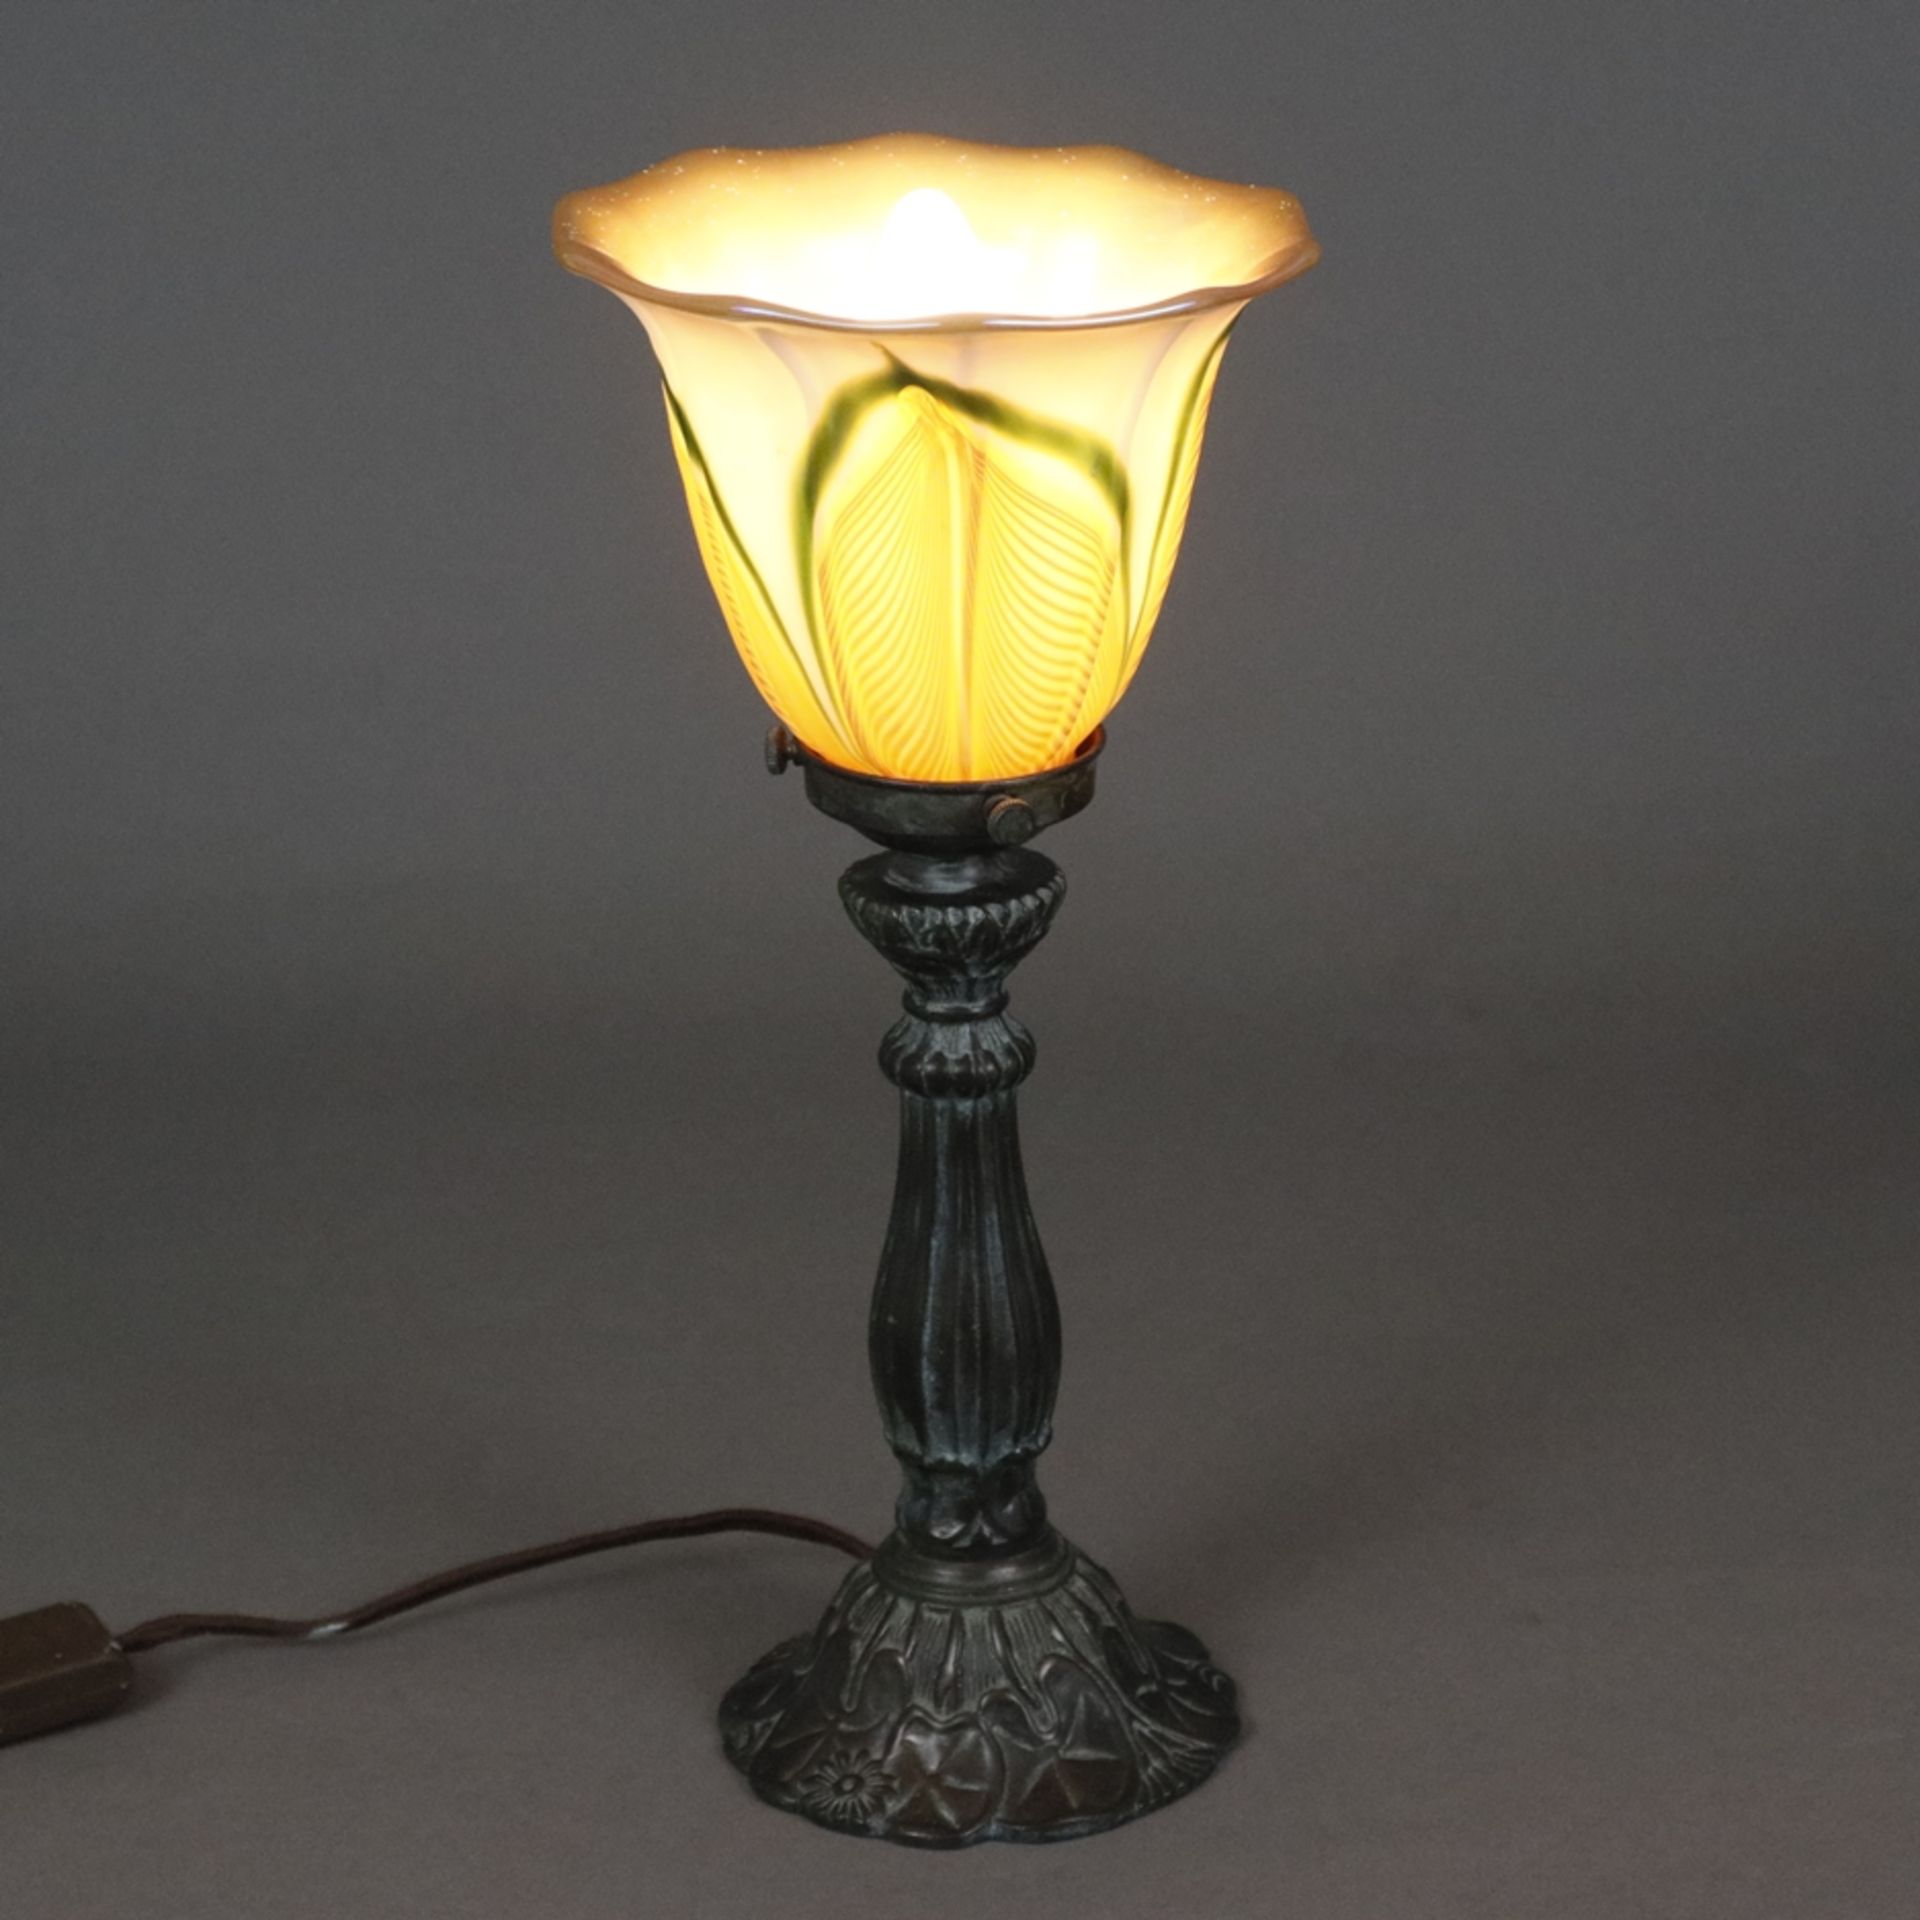 Jugendstil Tischlampe - um 1900/10, floral reliefierter Metallfuß, bronziert, glockenförmiger Glass - Bild 7 aus 7